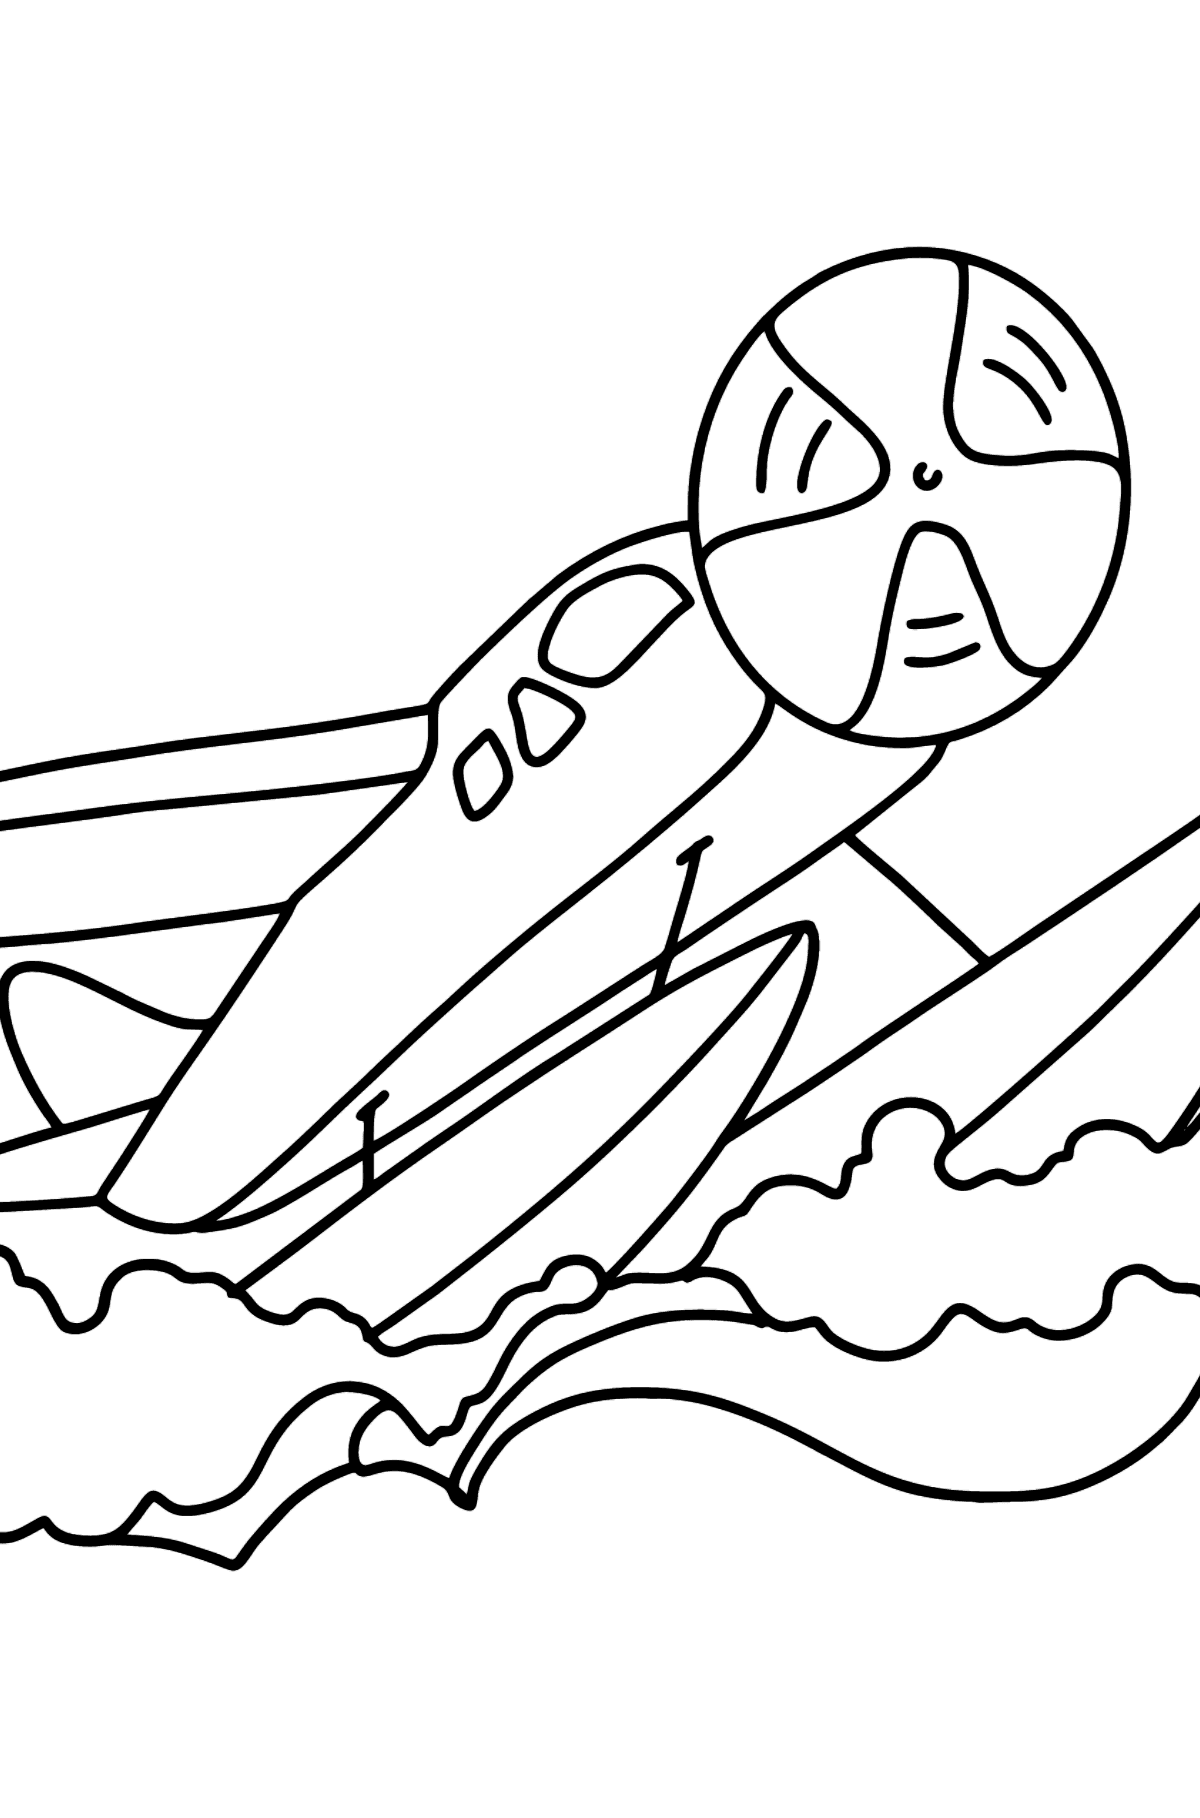 Boyama sayfası amfibi uçak - Boyamalar çocuklar için